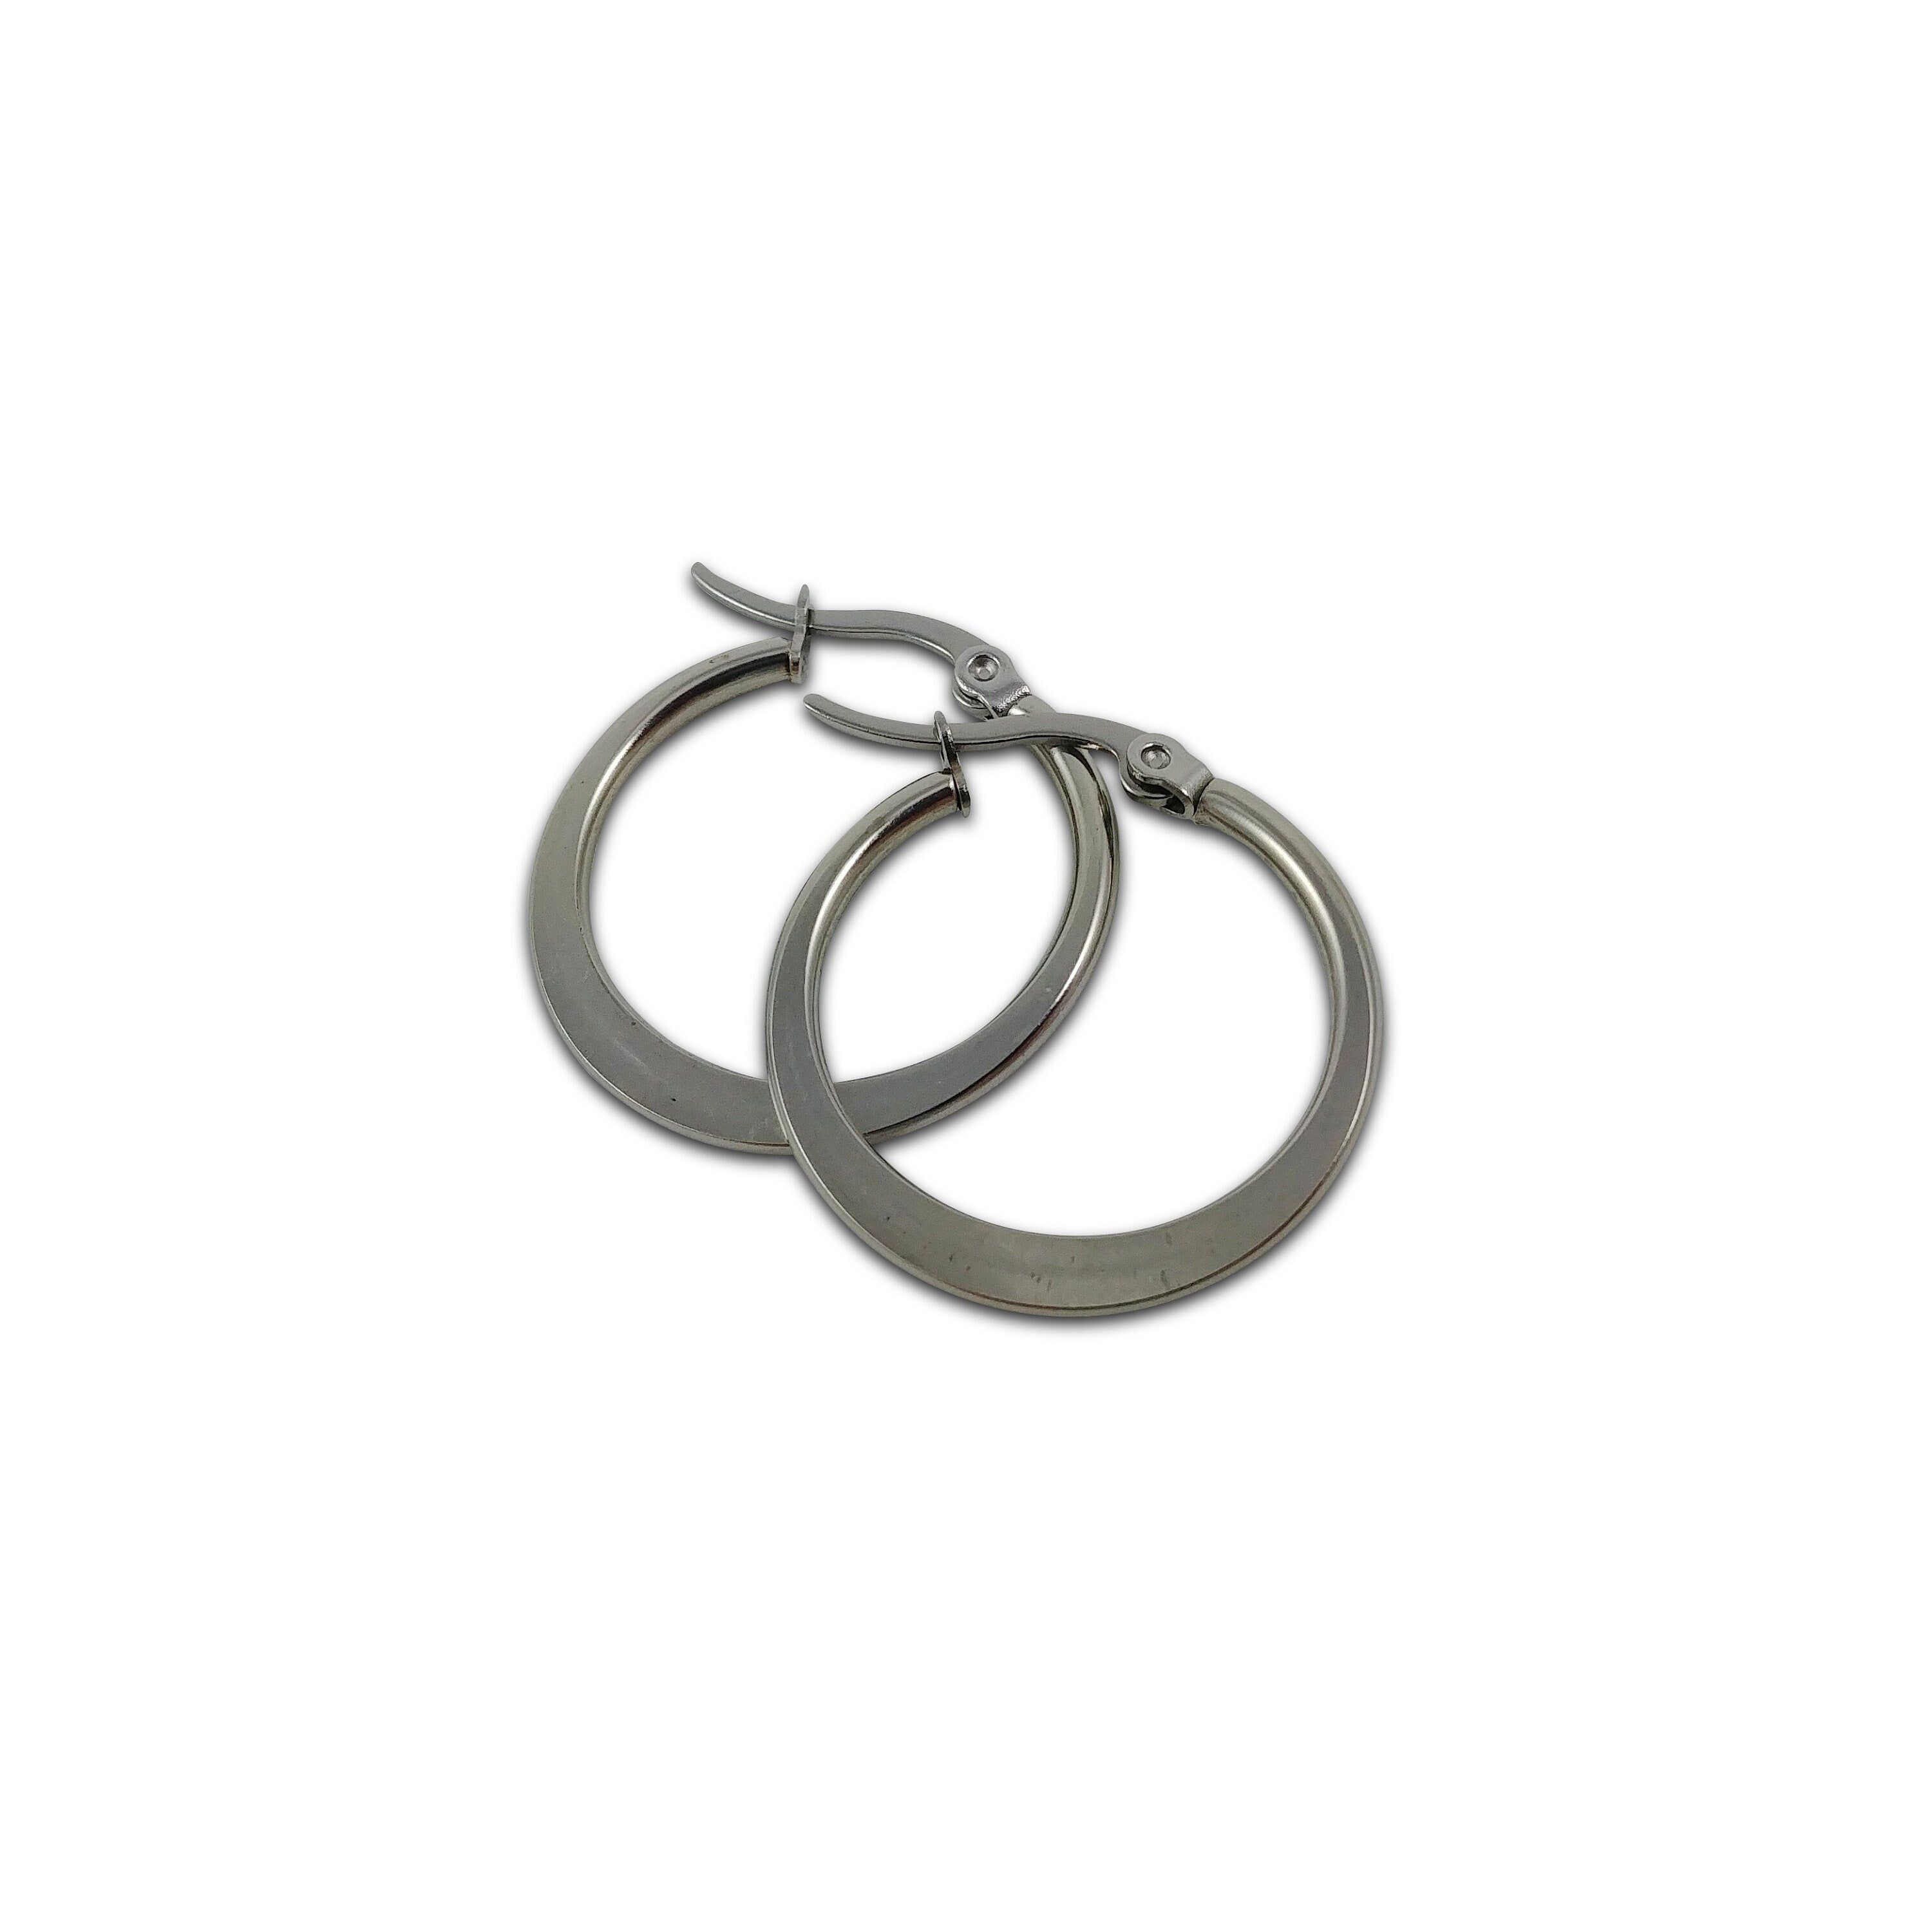 Stainless steel hoop earrings, Hypoallergenic earring findings, Flat ring shape, Silver latch back earwire